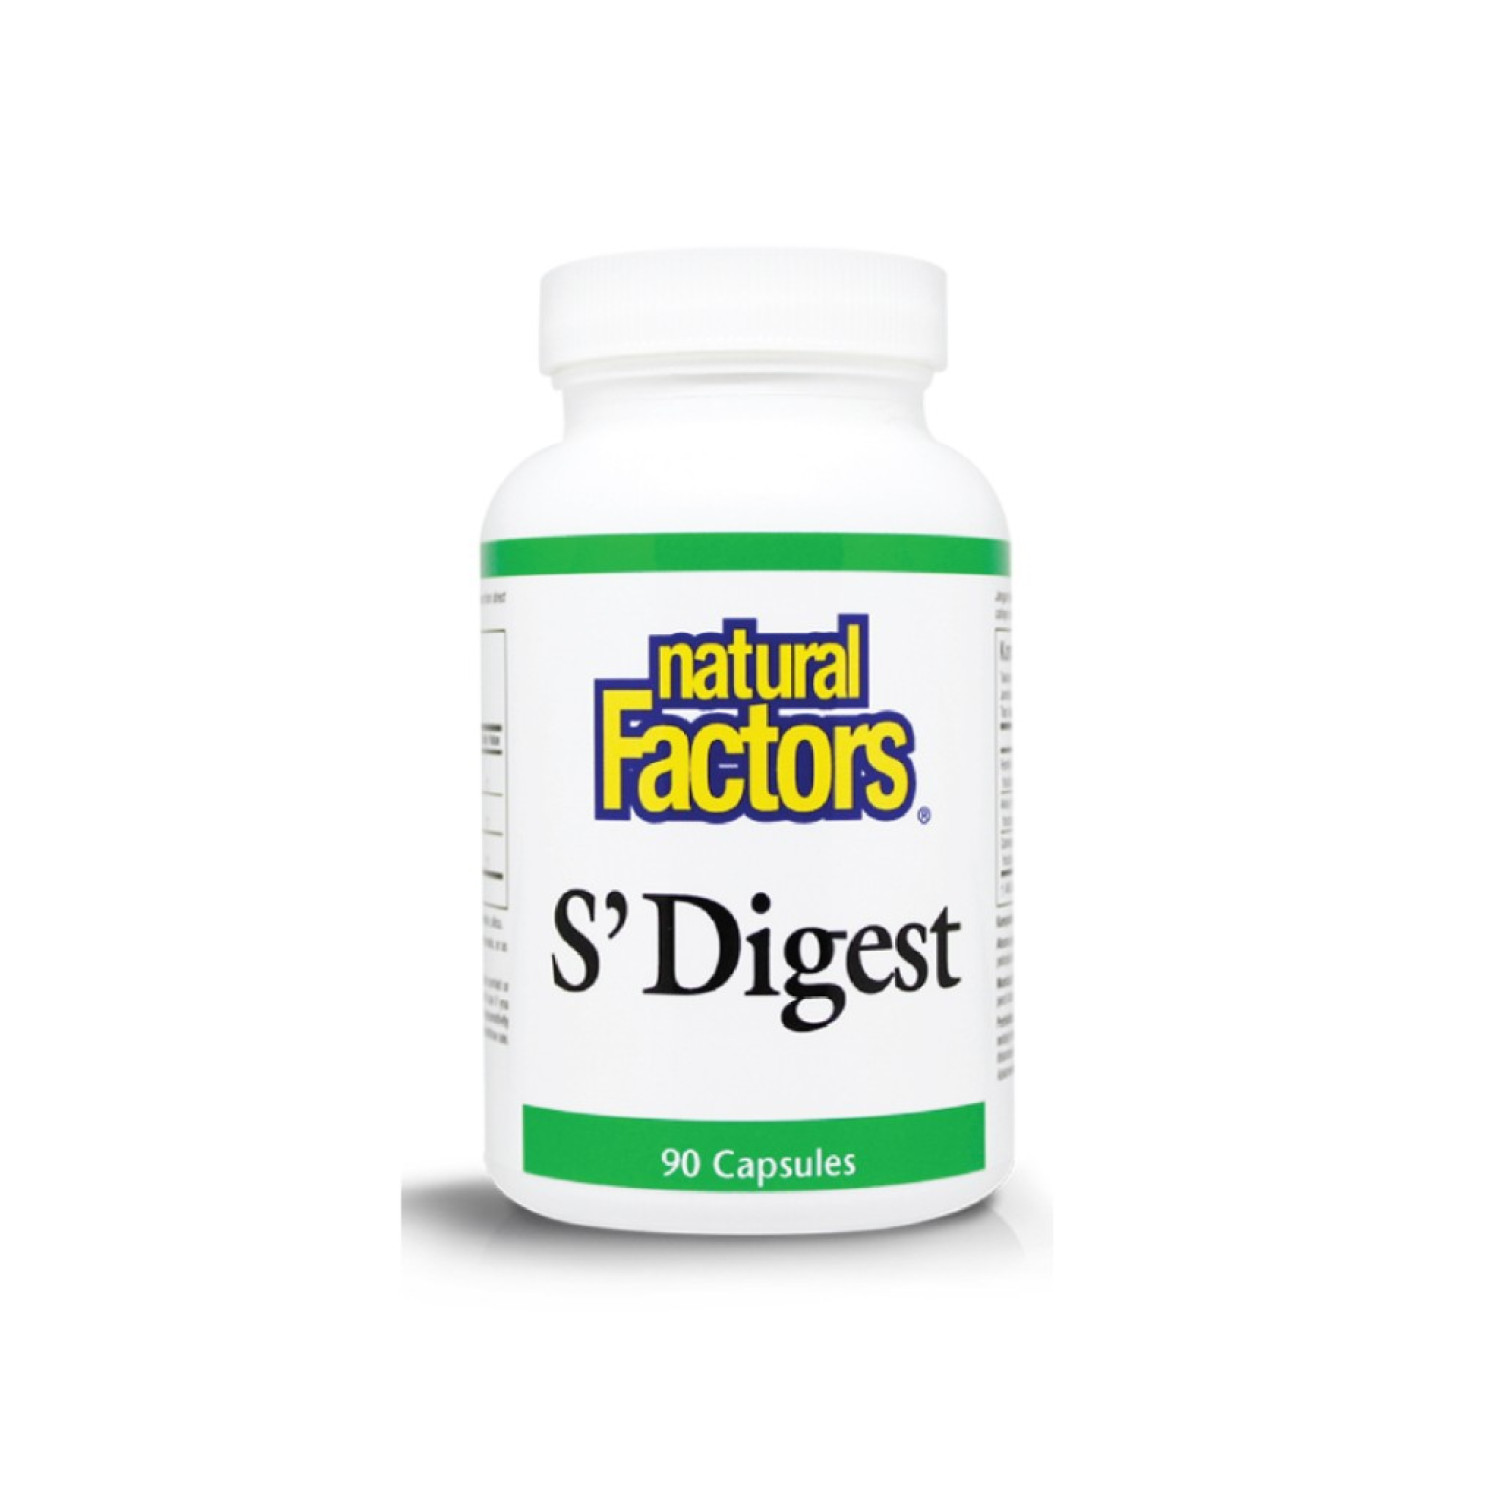 natural-factors-sdigest-soothe-digest-90-tablets-65421a9f7ef27.jpeg